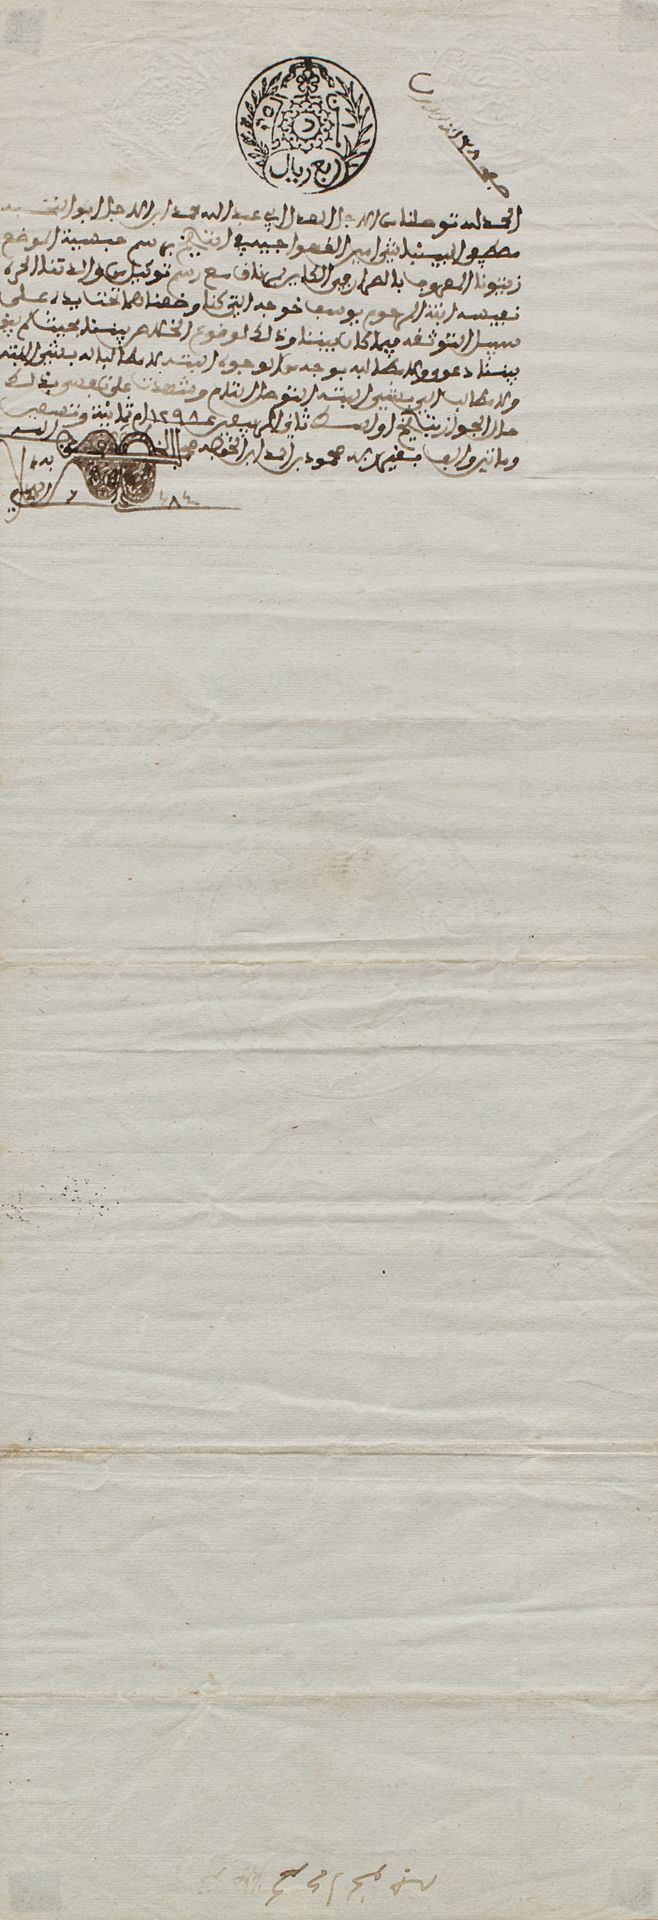 Contrat de vente Túnez, finales del siglo XIX

Manuscrito árabe sobre papel con &hellip;